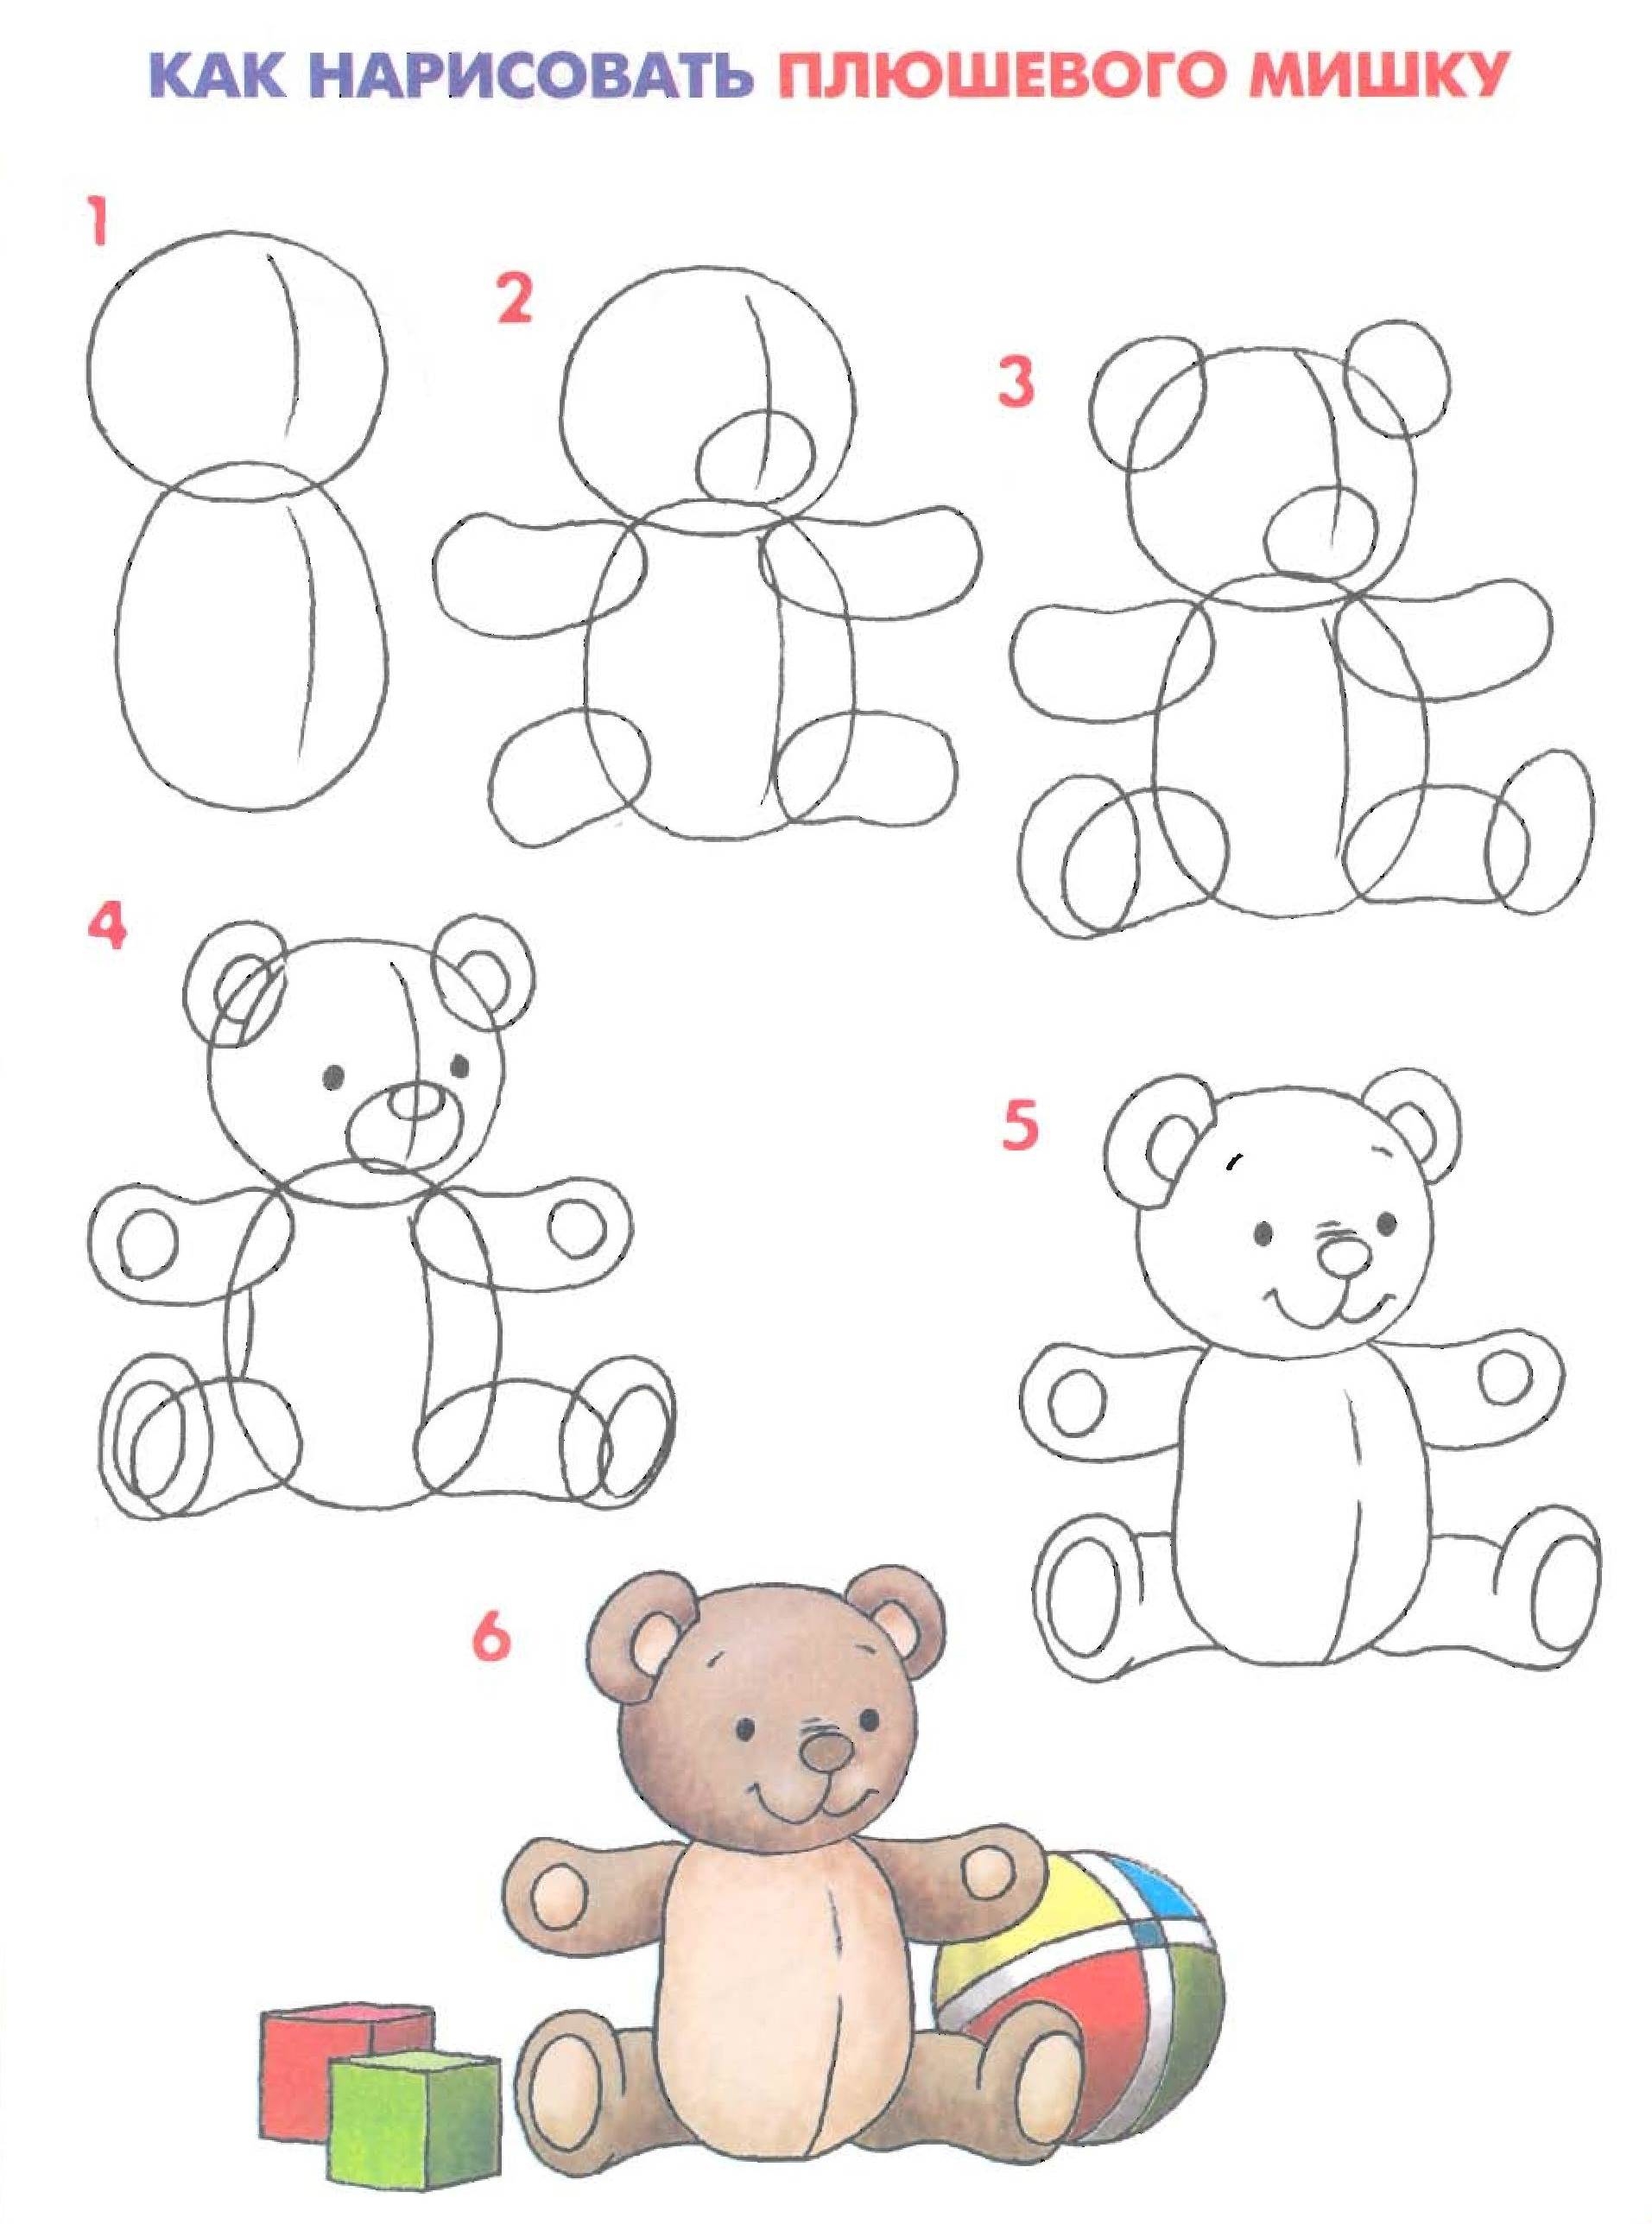 Как нарисовать медведя: пошаговое руководство